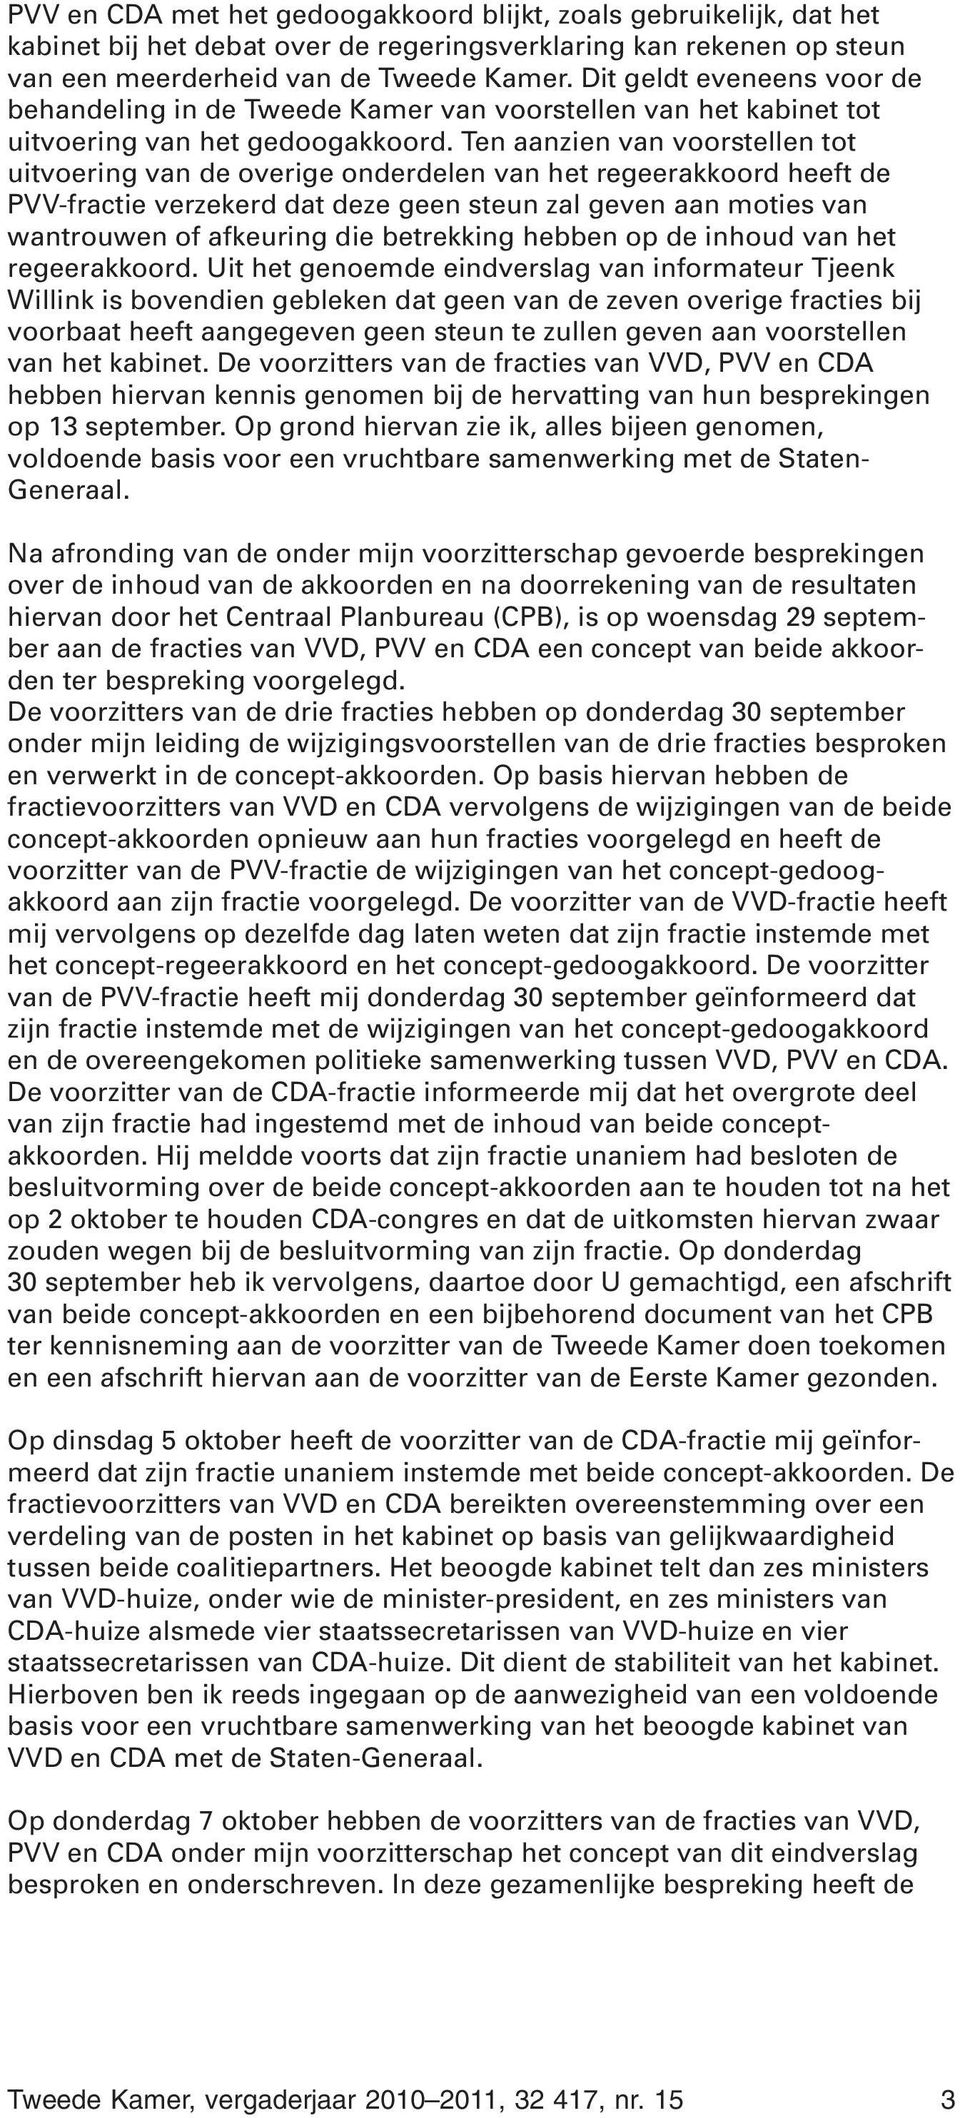 Ten aanzien van voorstellen tot uitvoering van de overige onderdelen van het regeerakkoord heeft de PVV-fractie verzekerd dat deze geen steun zal geven aan moties van wantrouwen of afkeuring die